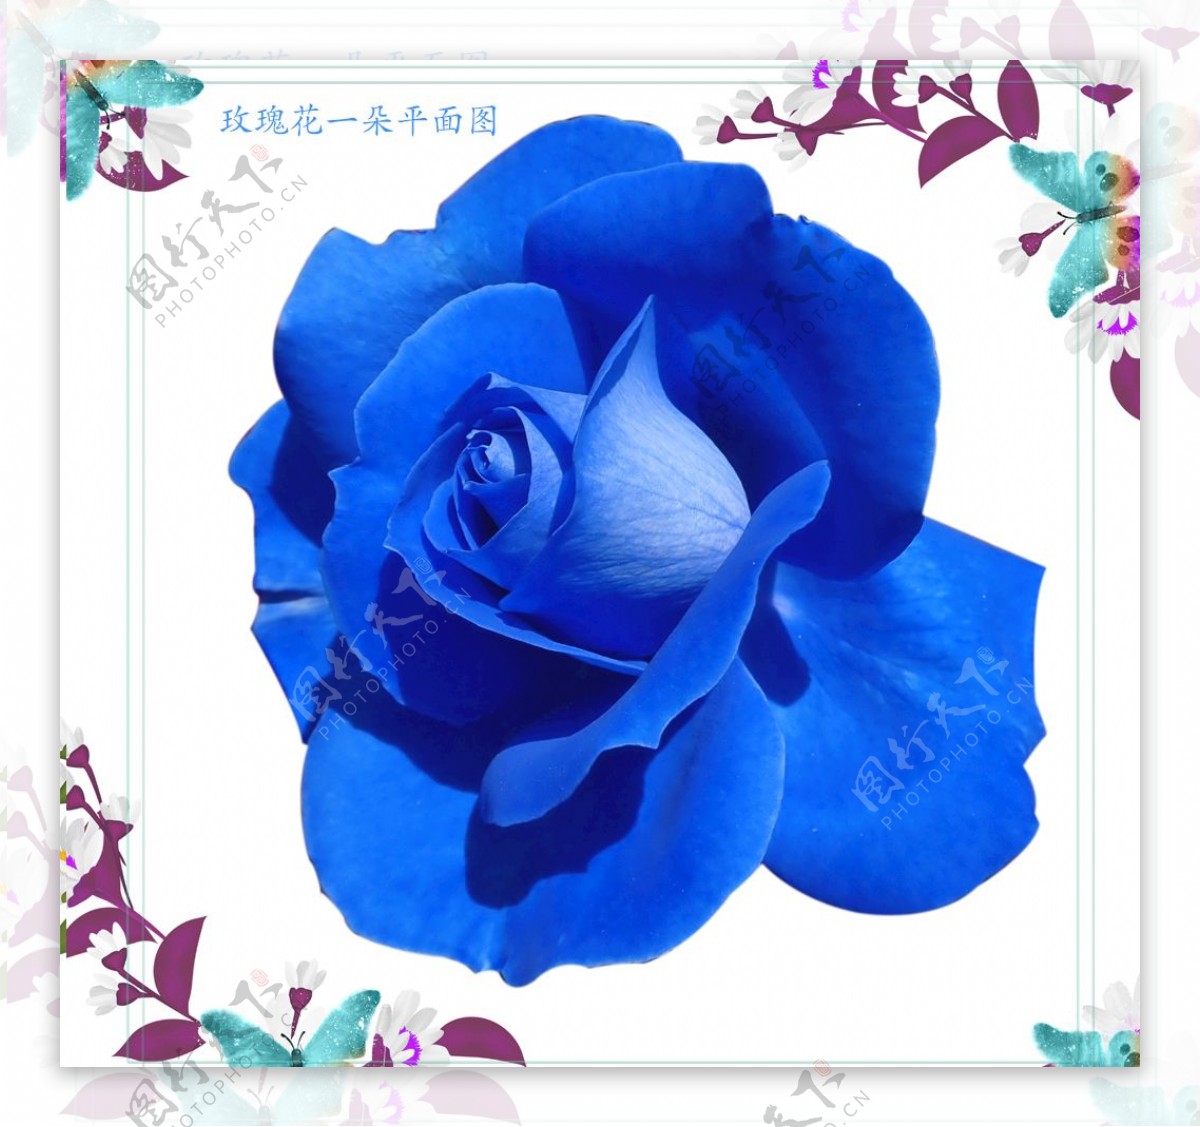 一朵蓝玫瑰花朵图片素材